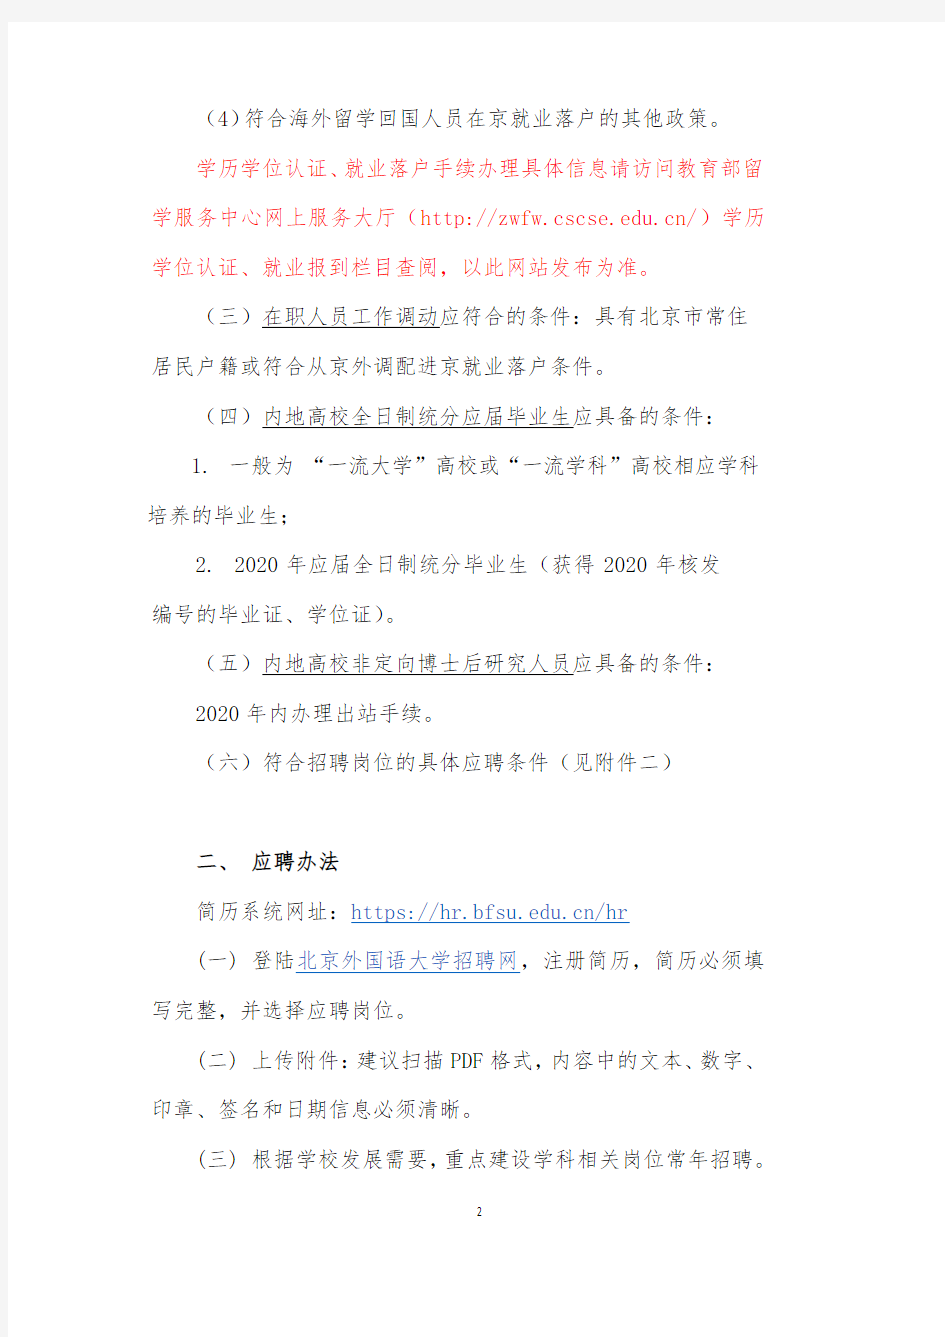 北京外国语大学2020年岗位招聘情况说明